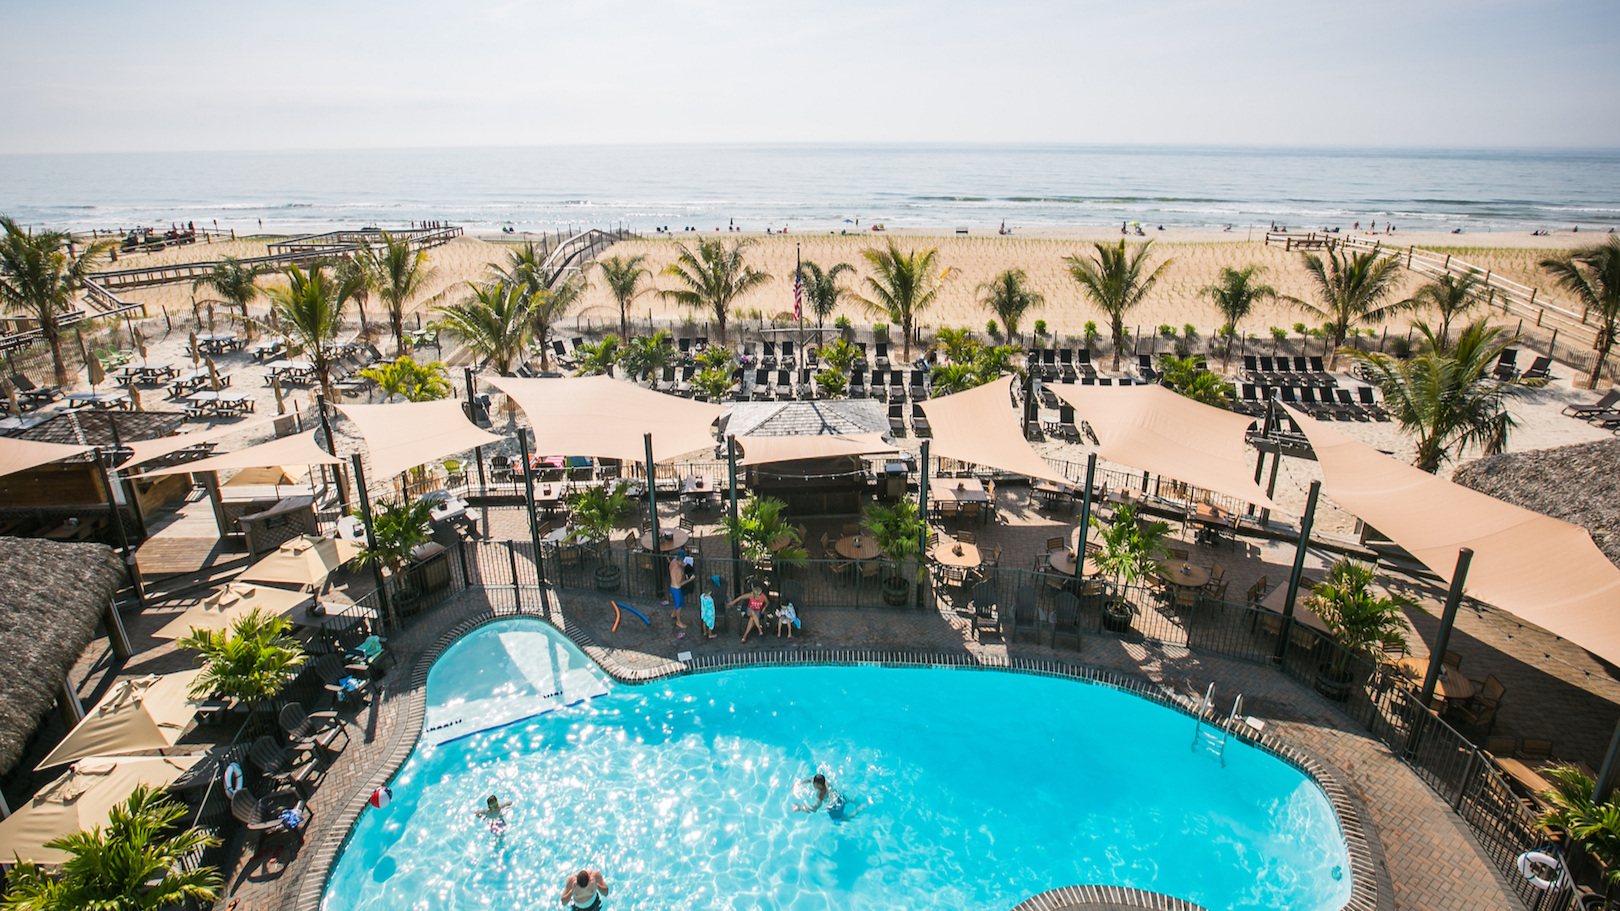 The Sea Shell Resort & Beach Club - Long Beach Island's Premier